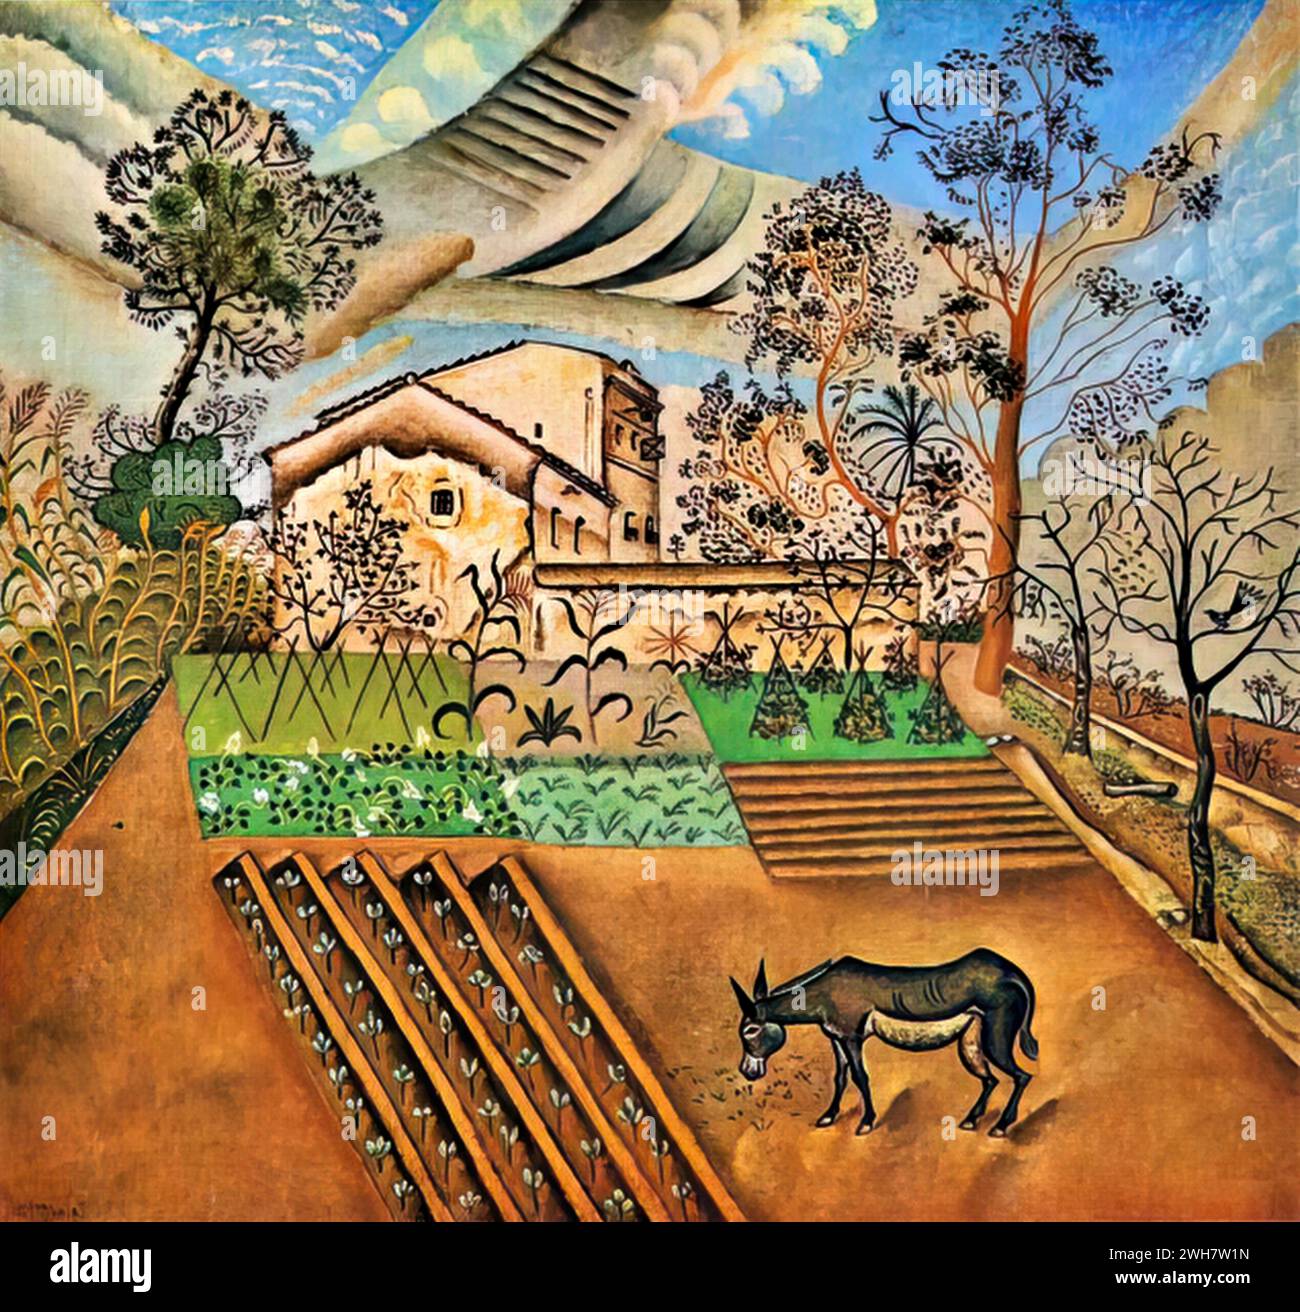 Le jardin potager avec l'âne, 1918 (huile sur toile) de l'artiste Miro, Joan (1893-1983) espagnol. Illustration de Vecteur